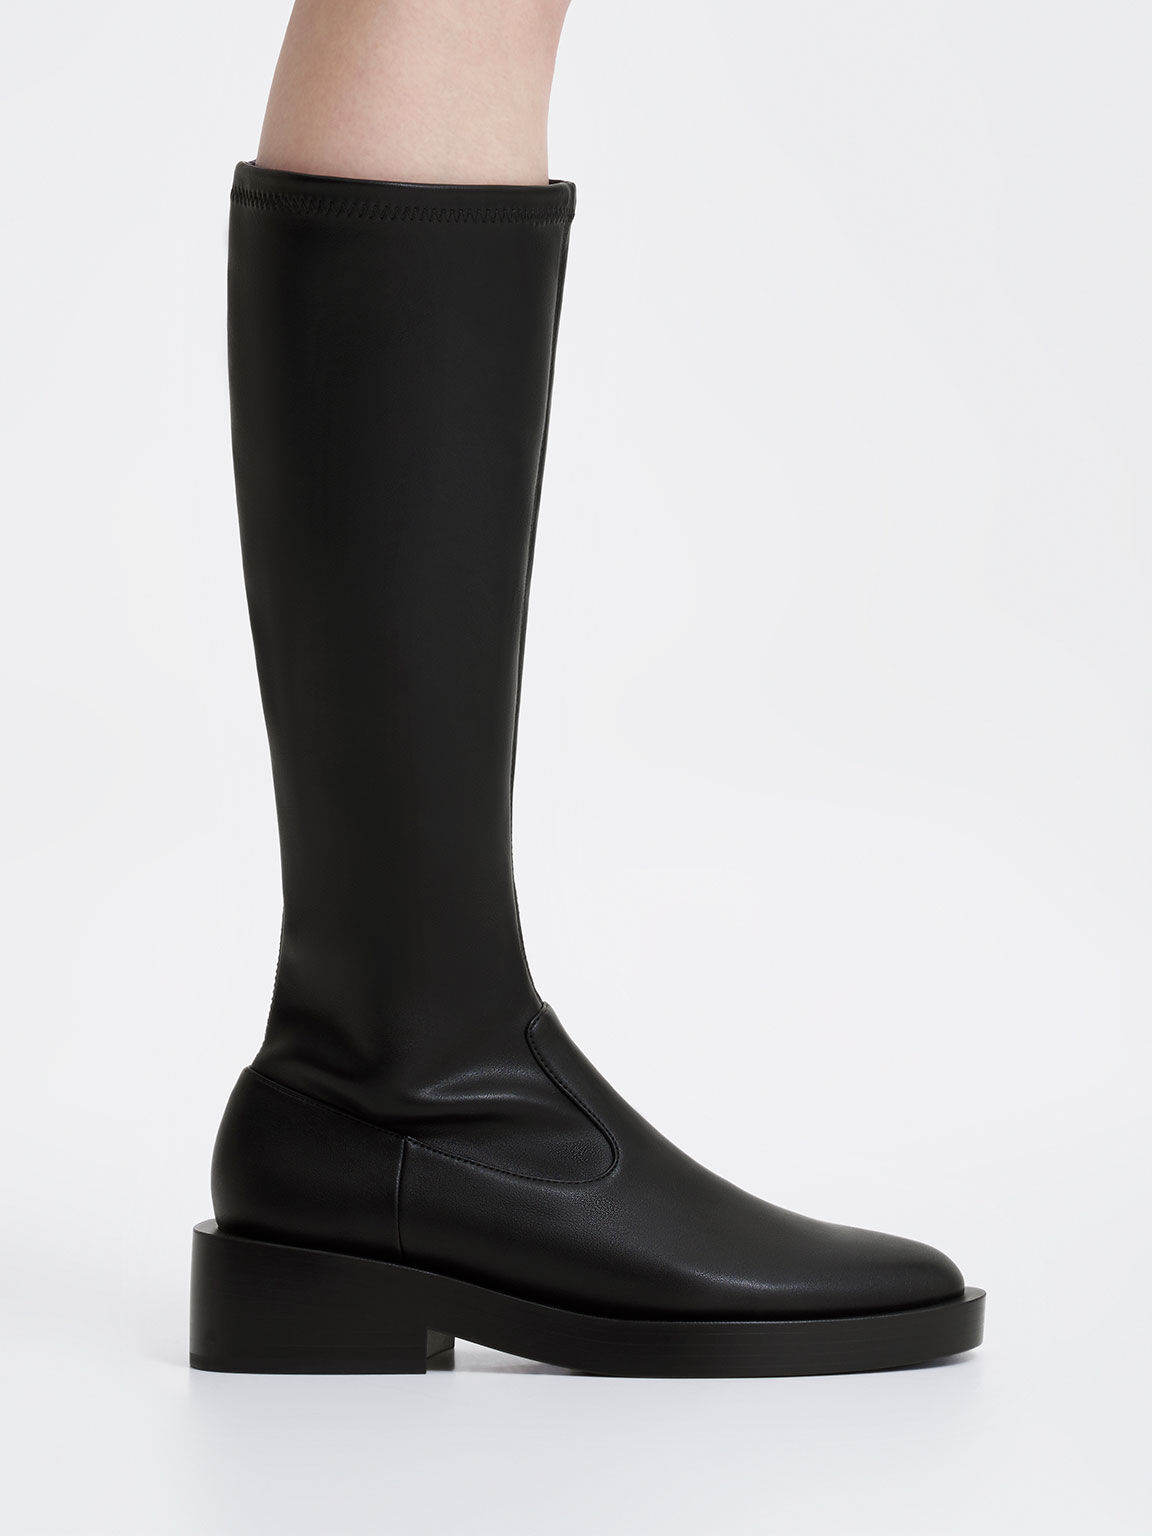 Women's Knee-High Boots, Shop Online